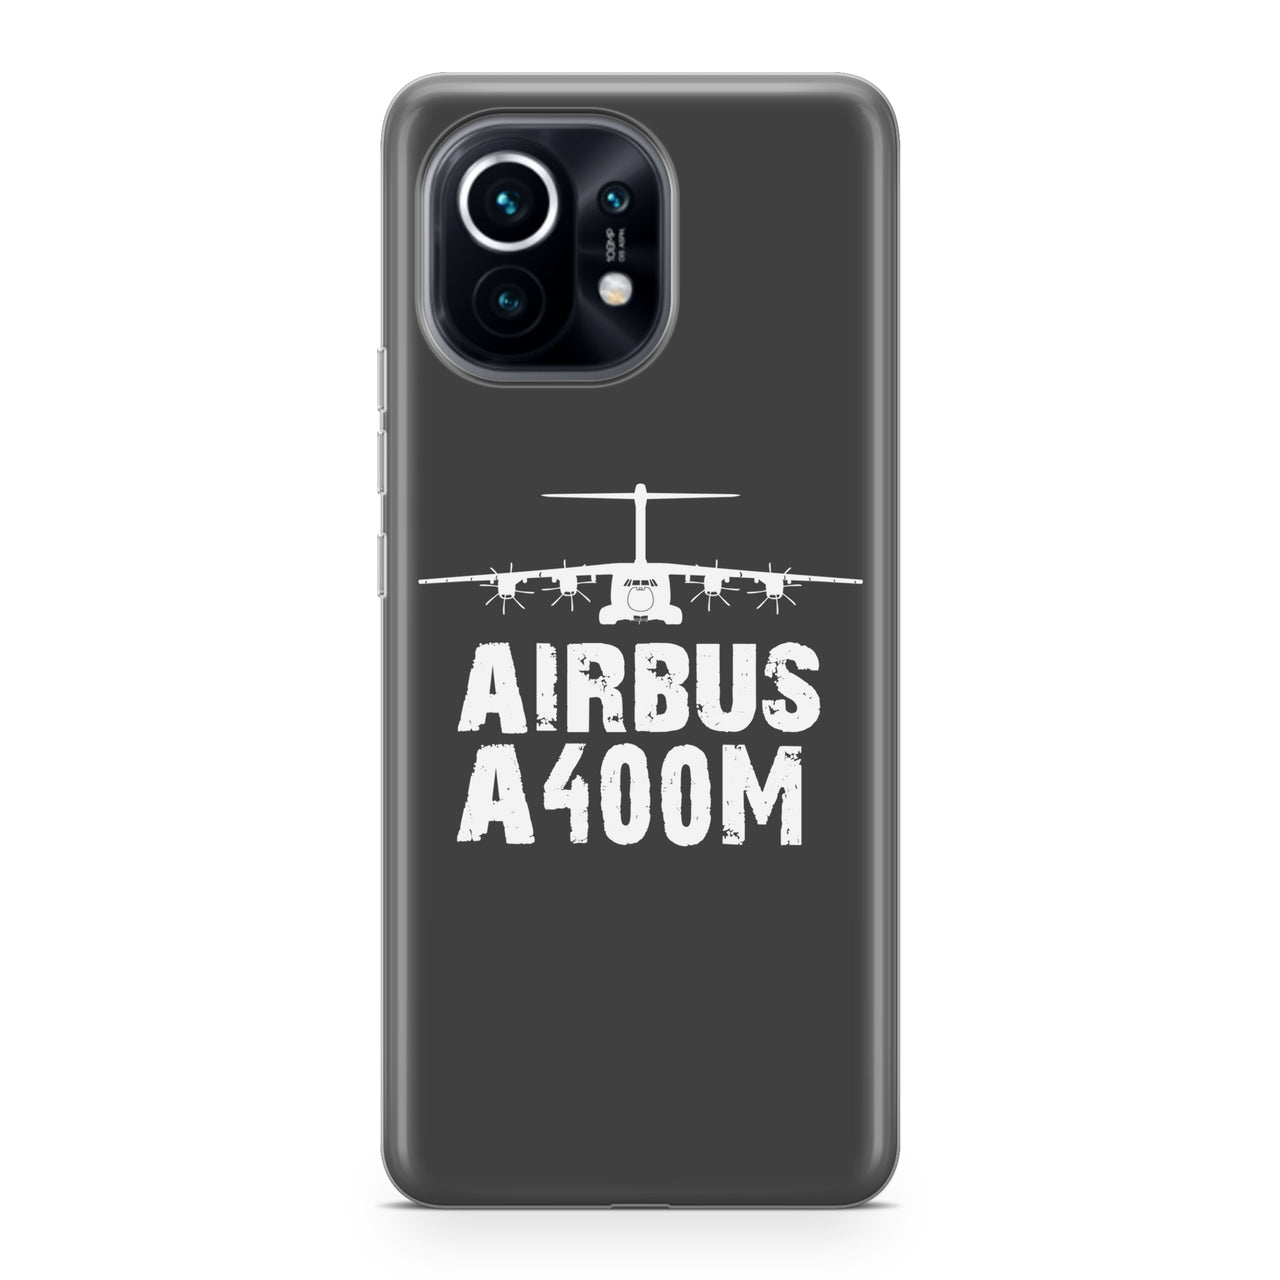 Airbus A400M & Plane Designed Xiaomi Cases